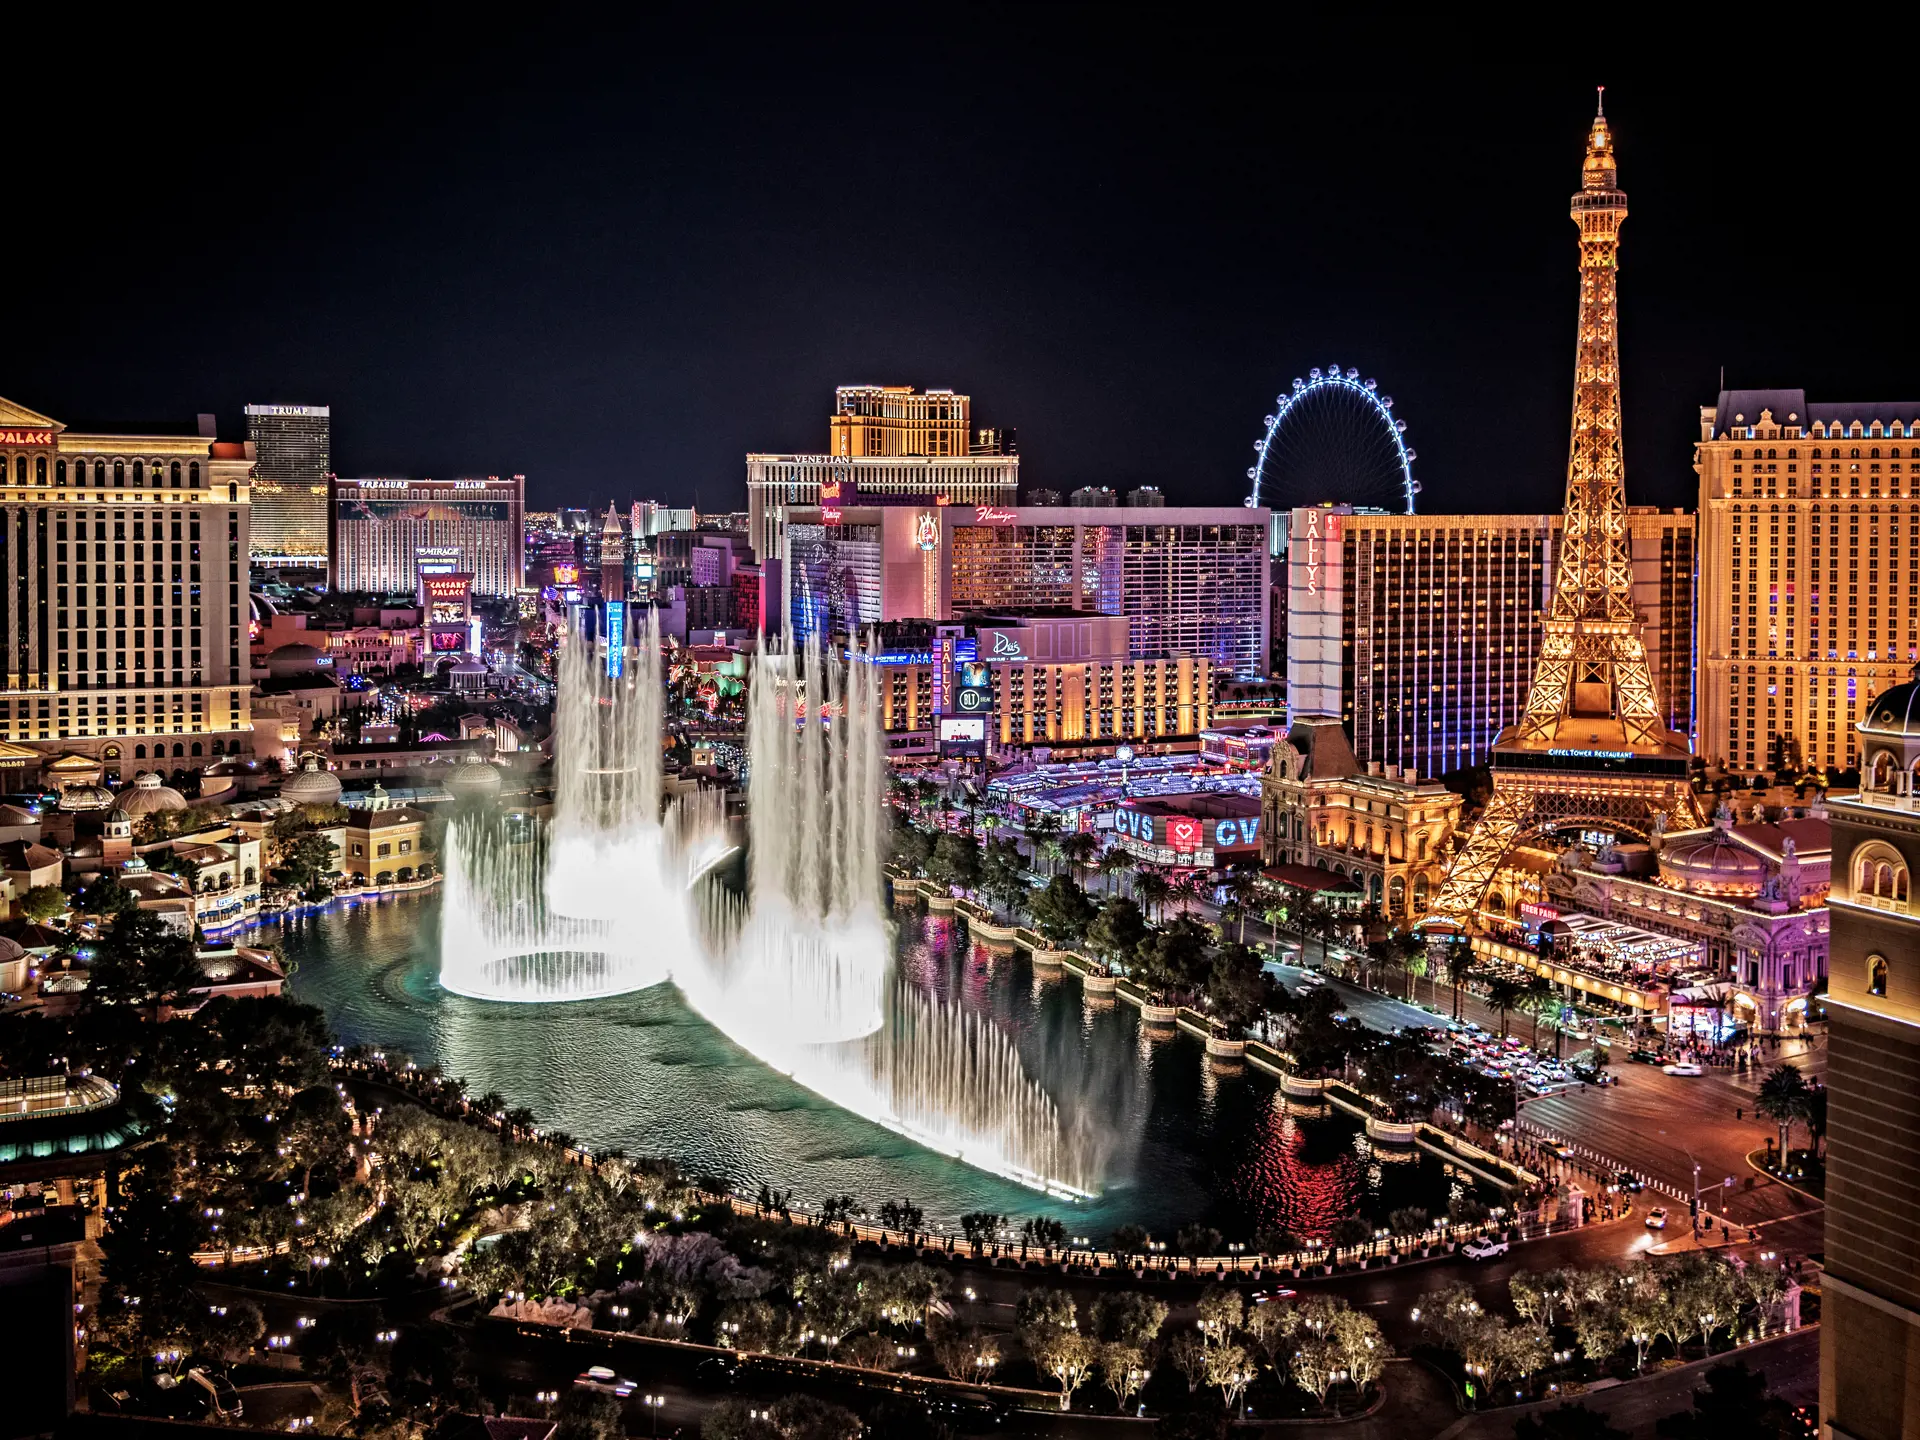 Las Vegas by Night med Belaggio springvandet i forgrunden - shutterstock_1091396189.jpg